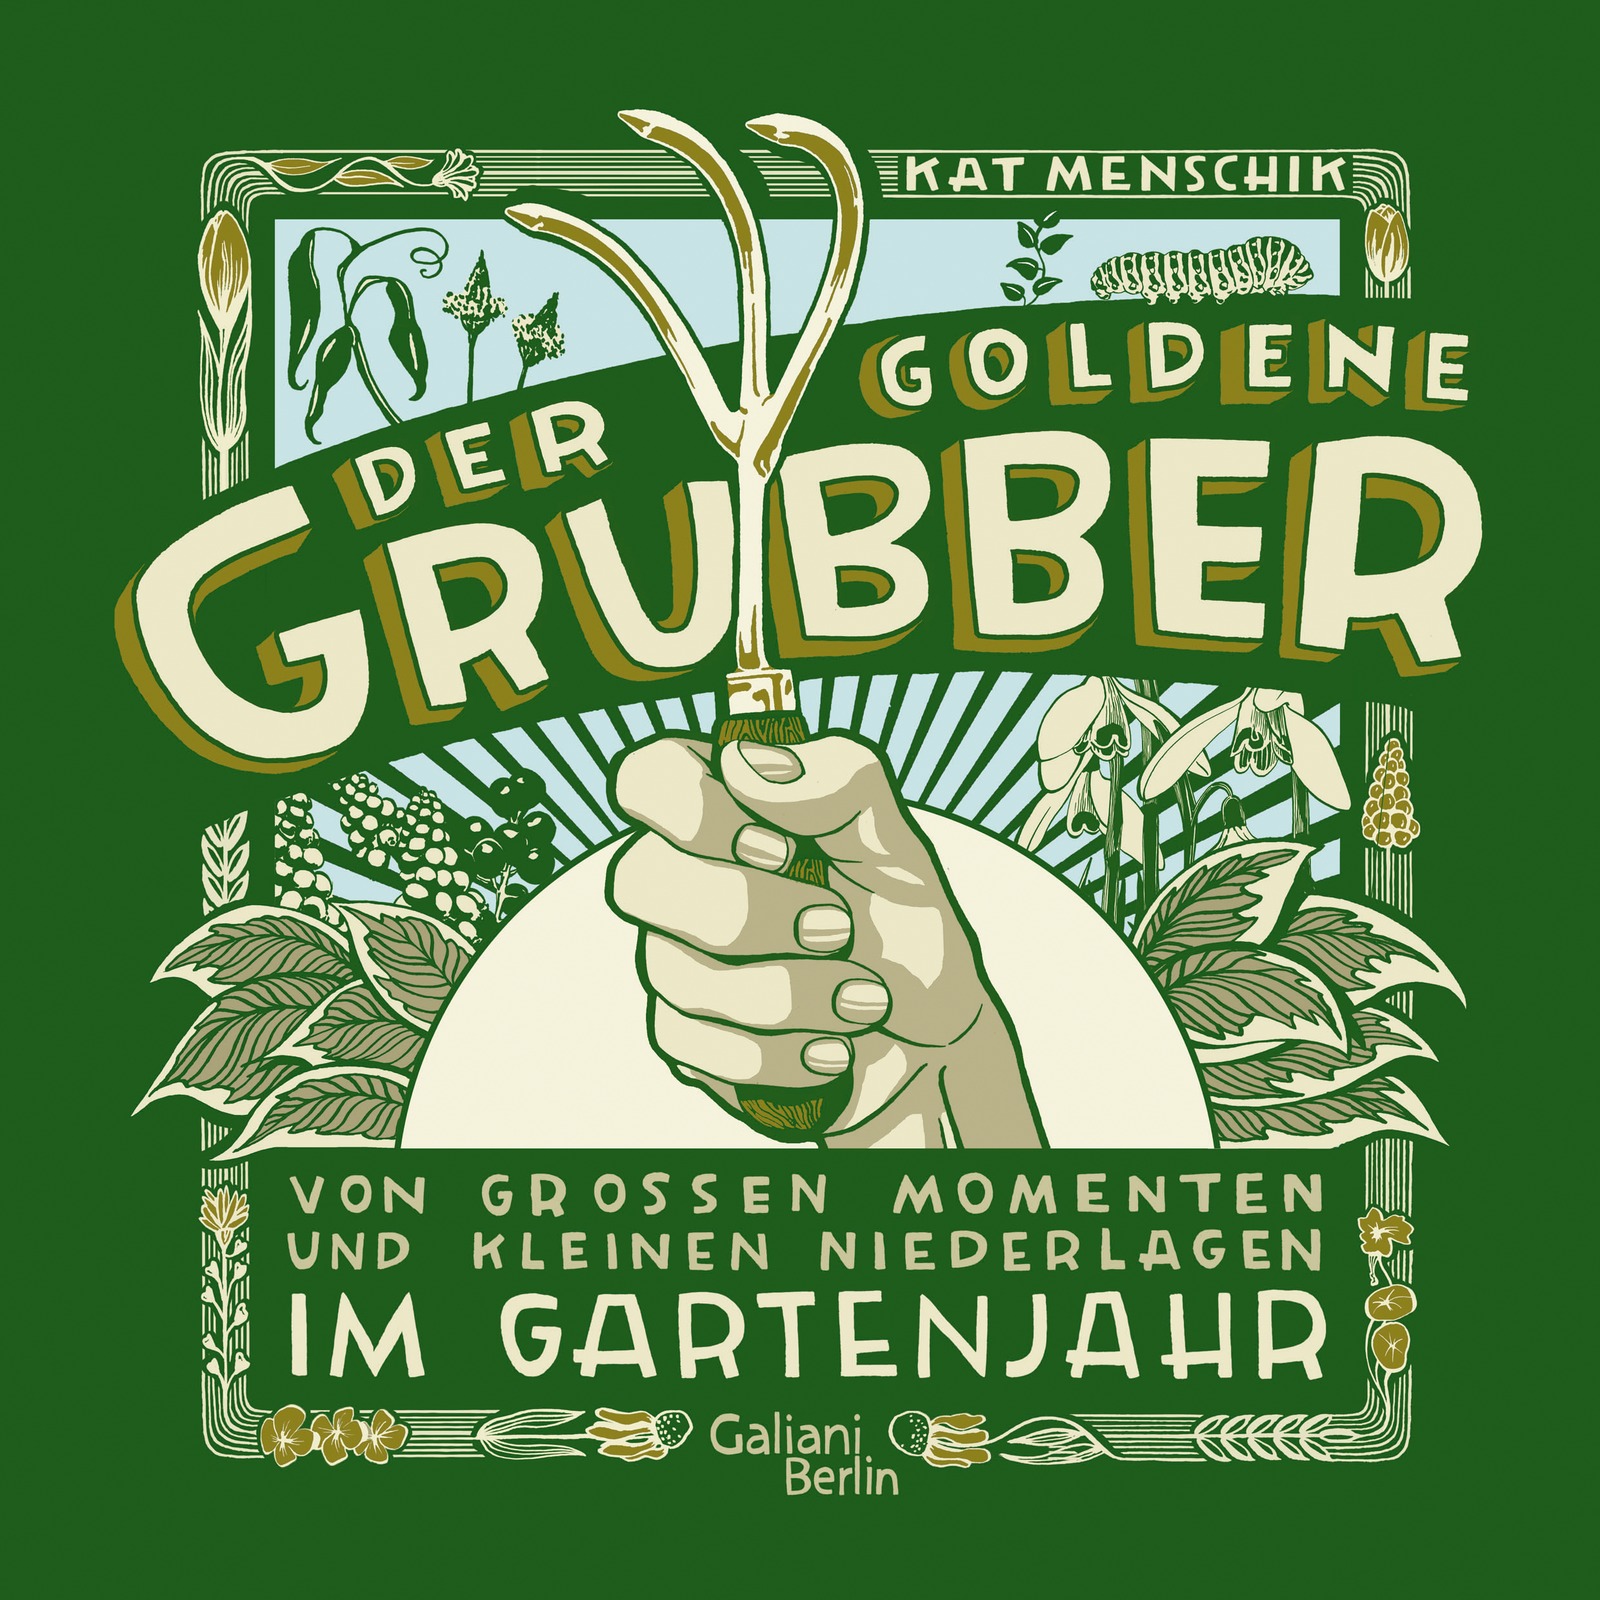 »DER GOLDENE GRUBBER - SONDERAUSGABE« — GALIANI